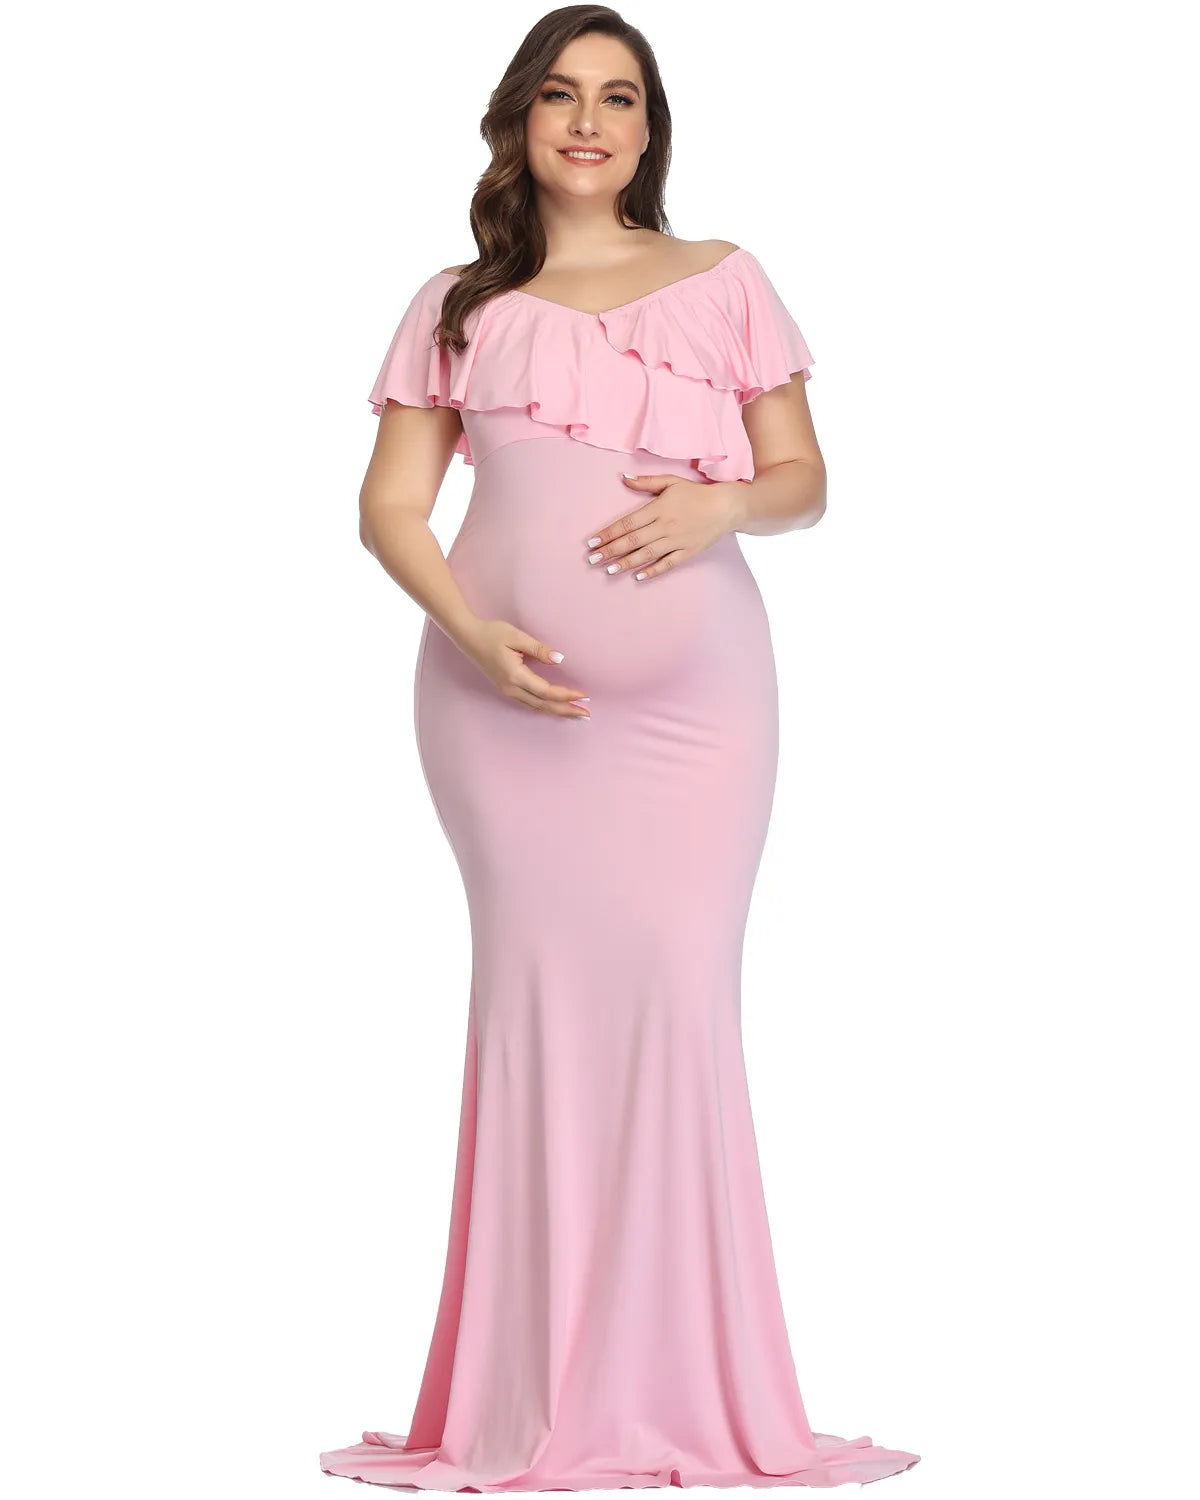 Plus Size Bohemian Maternity Photoshoot Dress pink by Baby Minaj Cruz